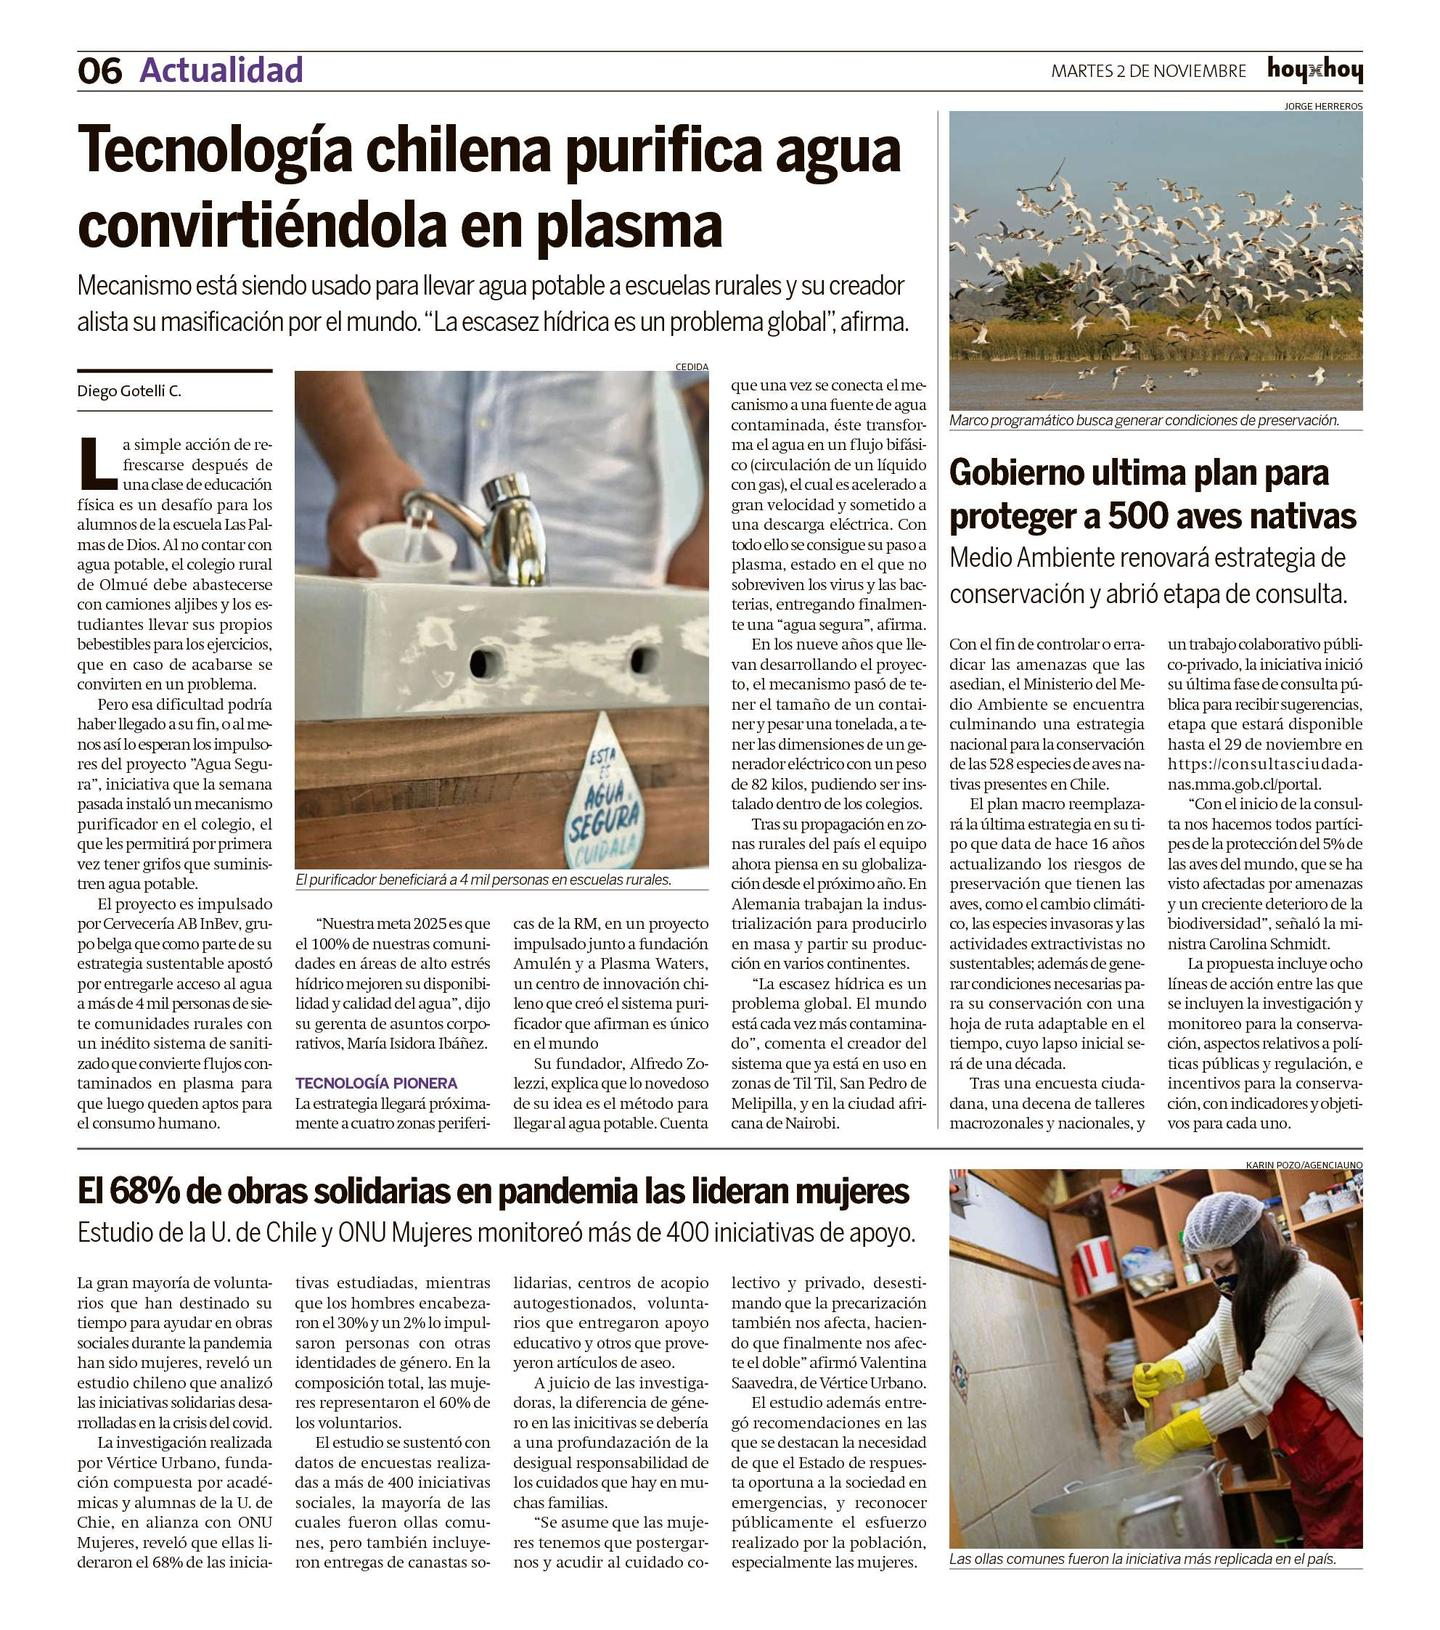 HoyxHoy, 02 de noviembre 2021, «Tecnología chilena purifica agua convirtiéndola en plasma»